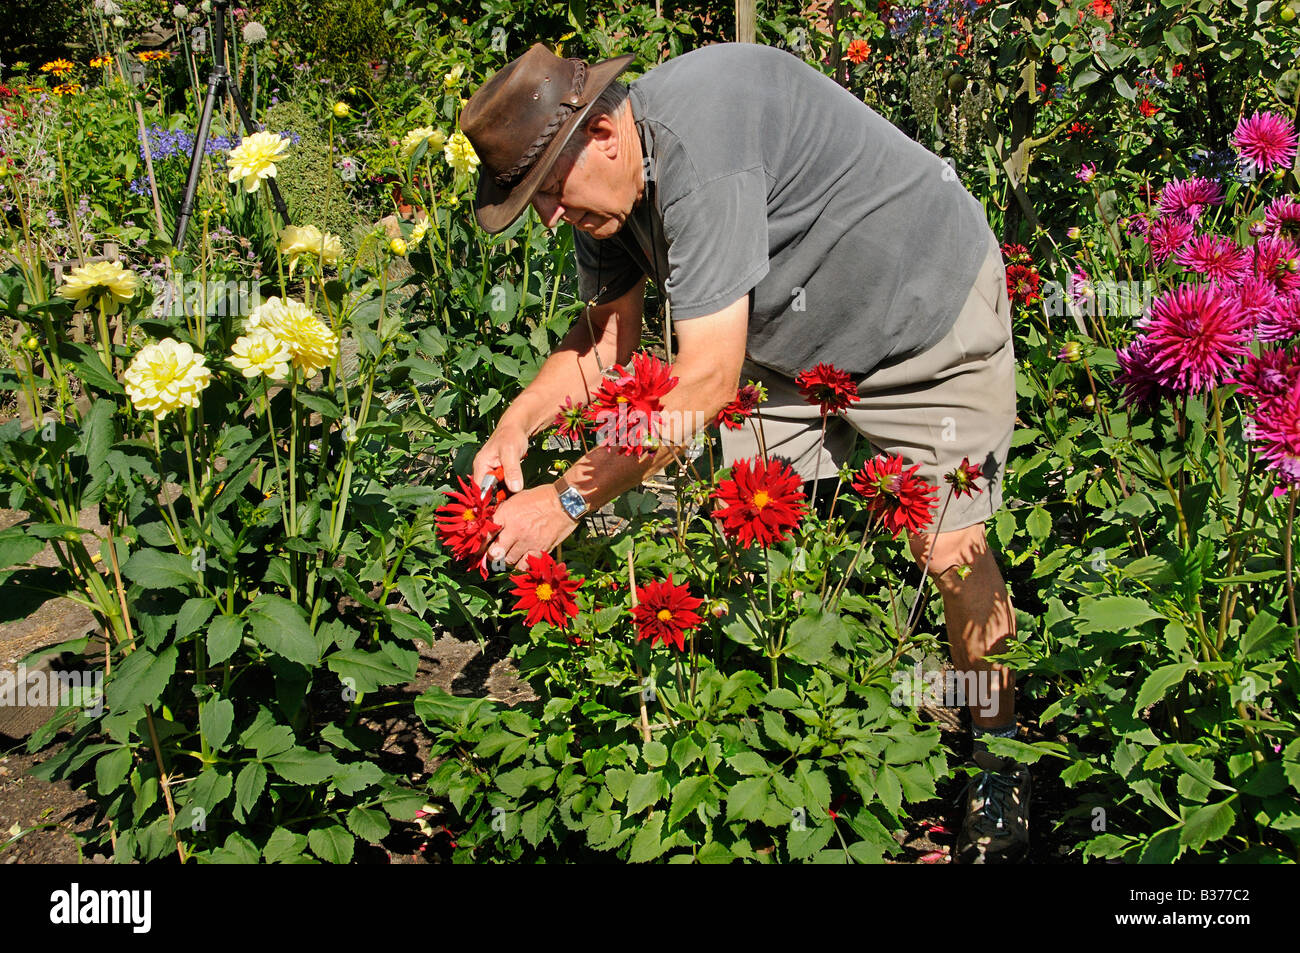 Chauffeur particulier à vide dahlias dans un jardin d'été Juillet Royaume-uni Banque D'Images